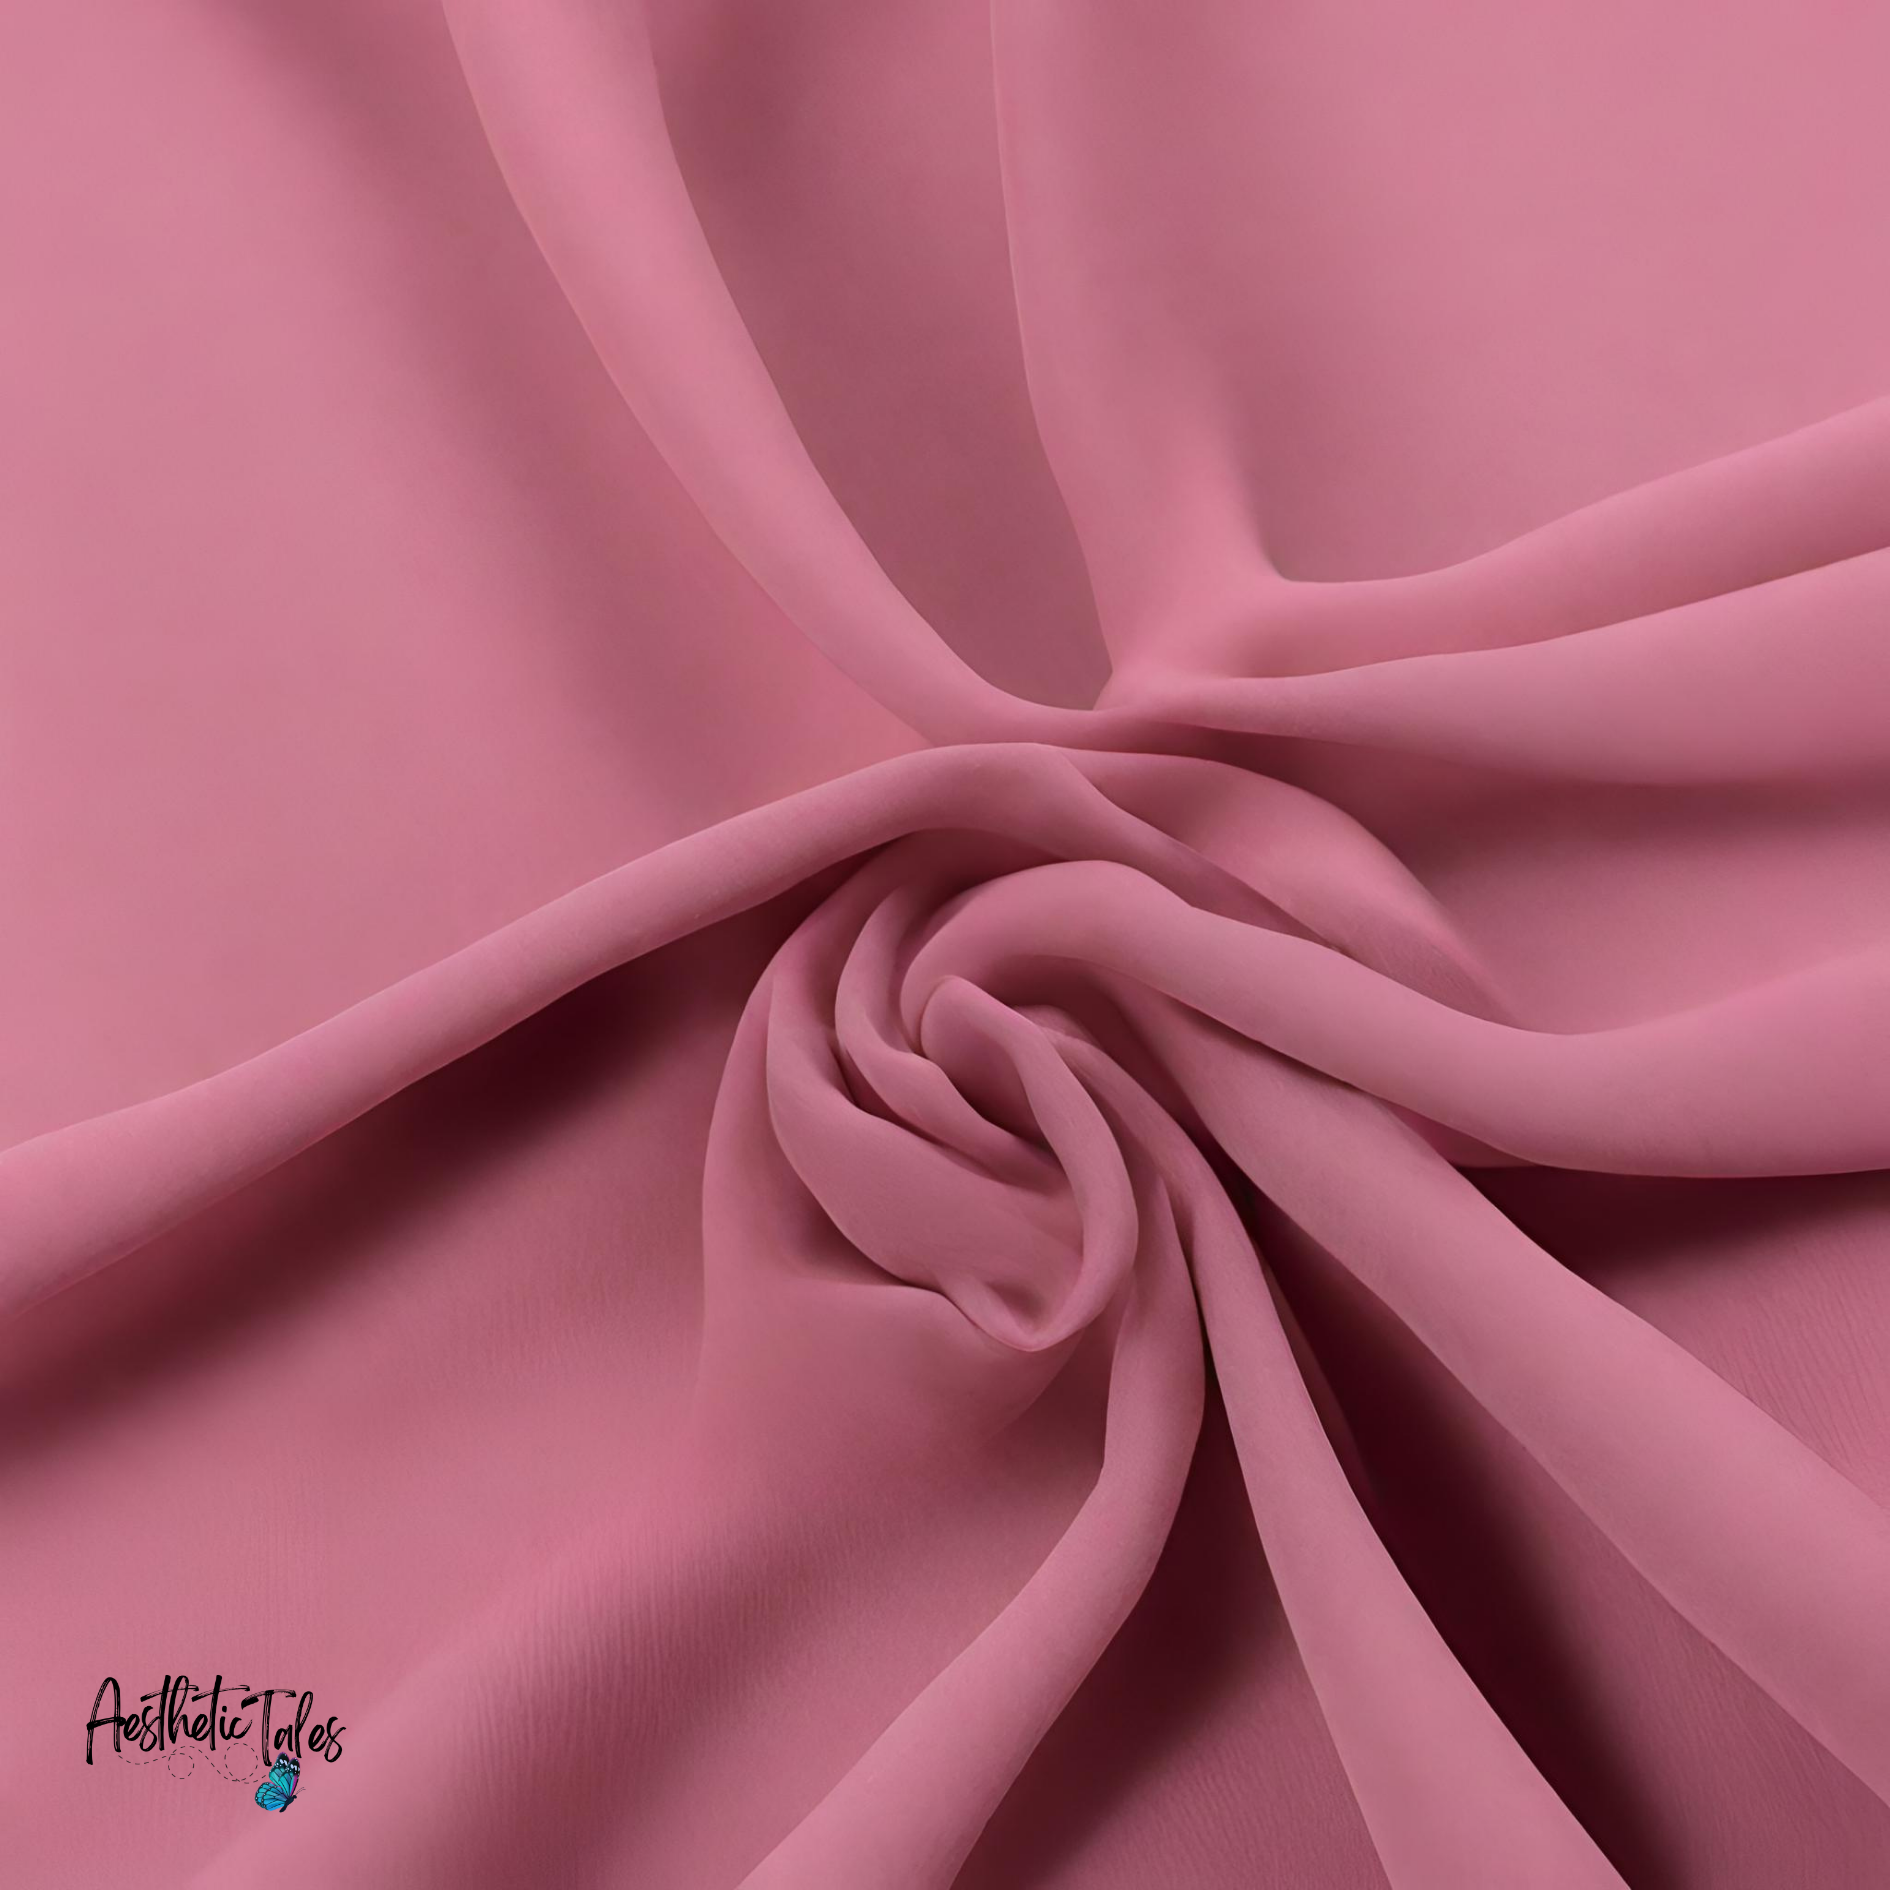 Premium Chiffon Hijab - Kashmiri Pink